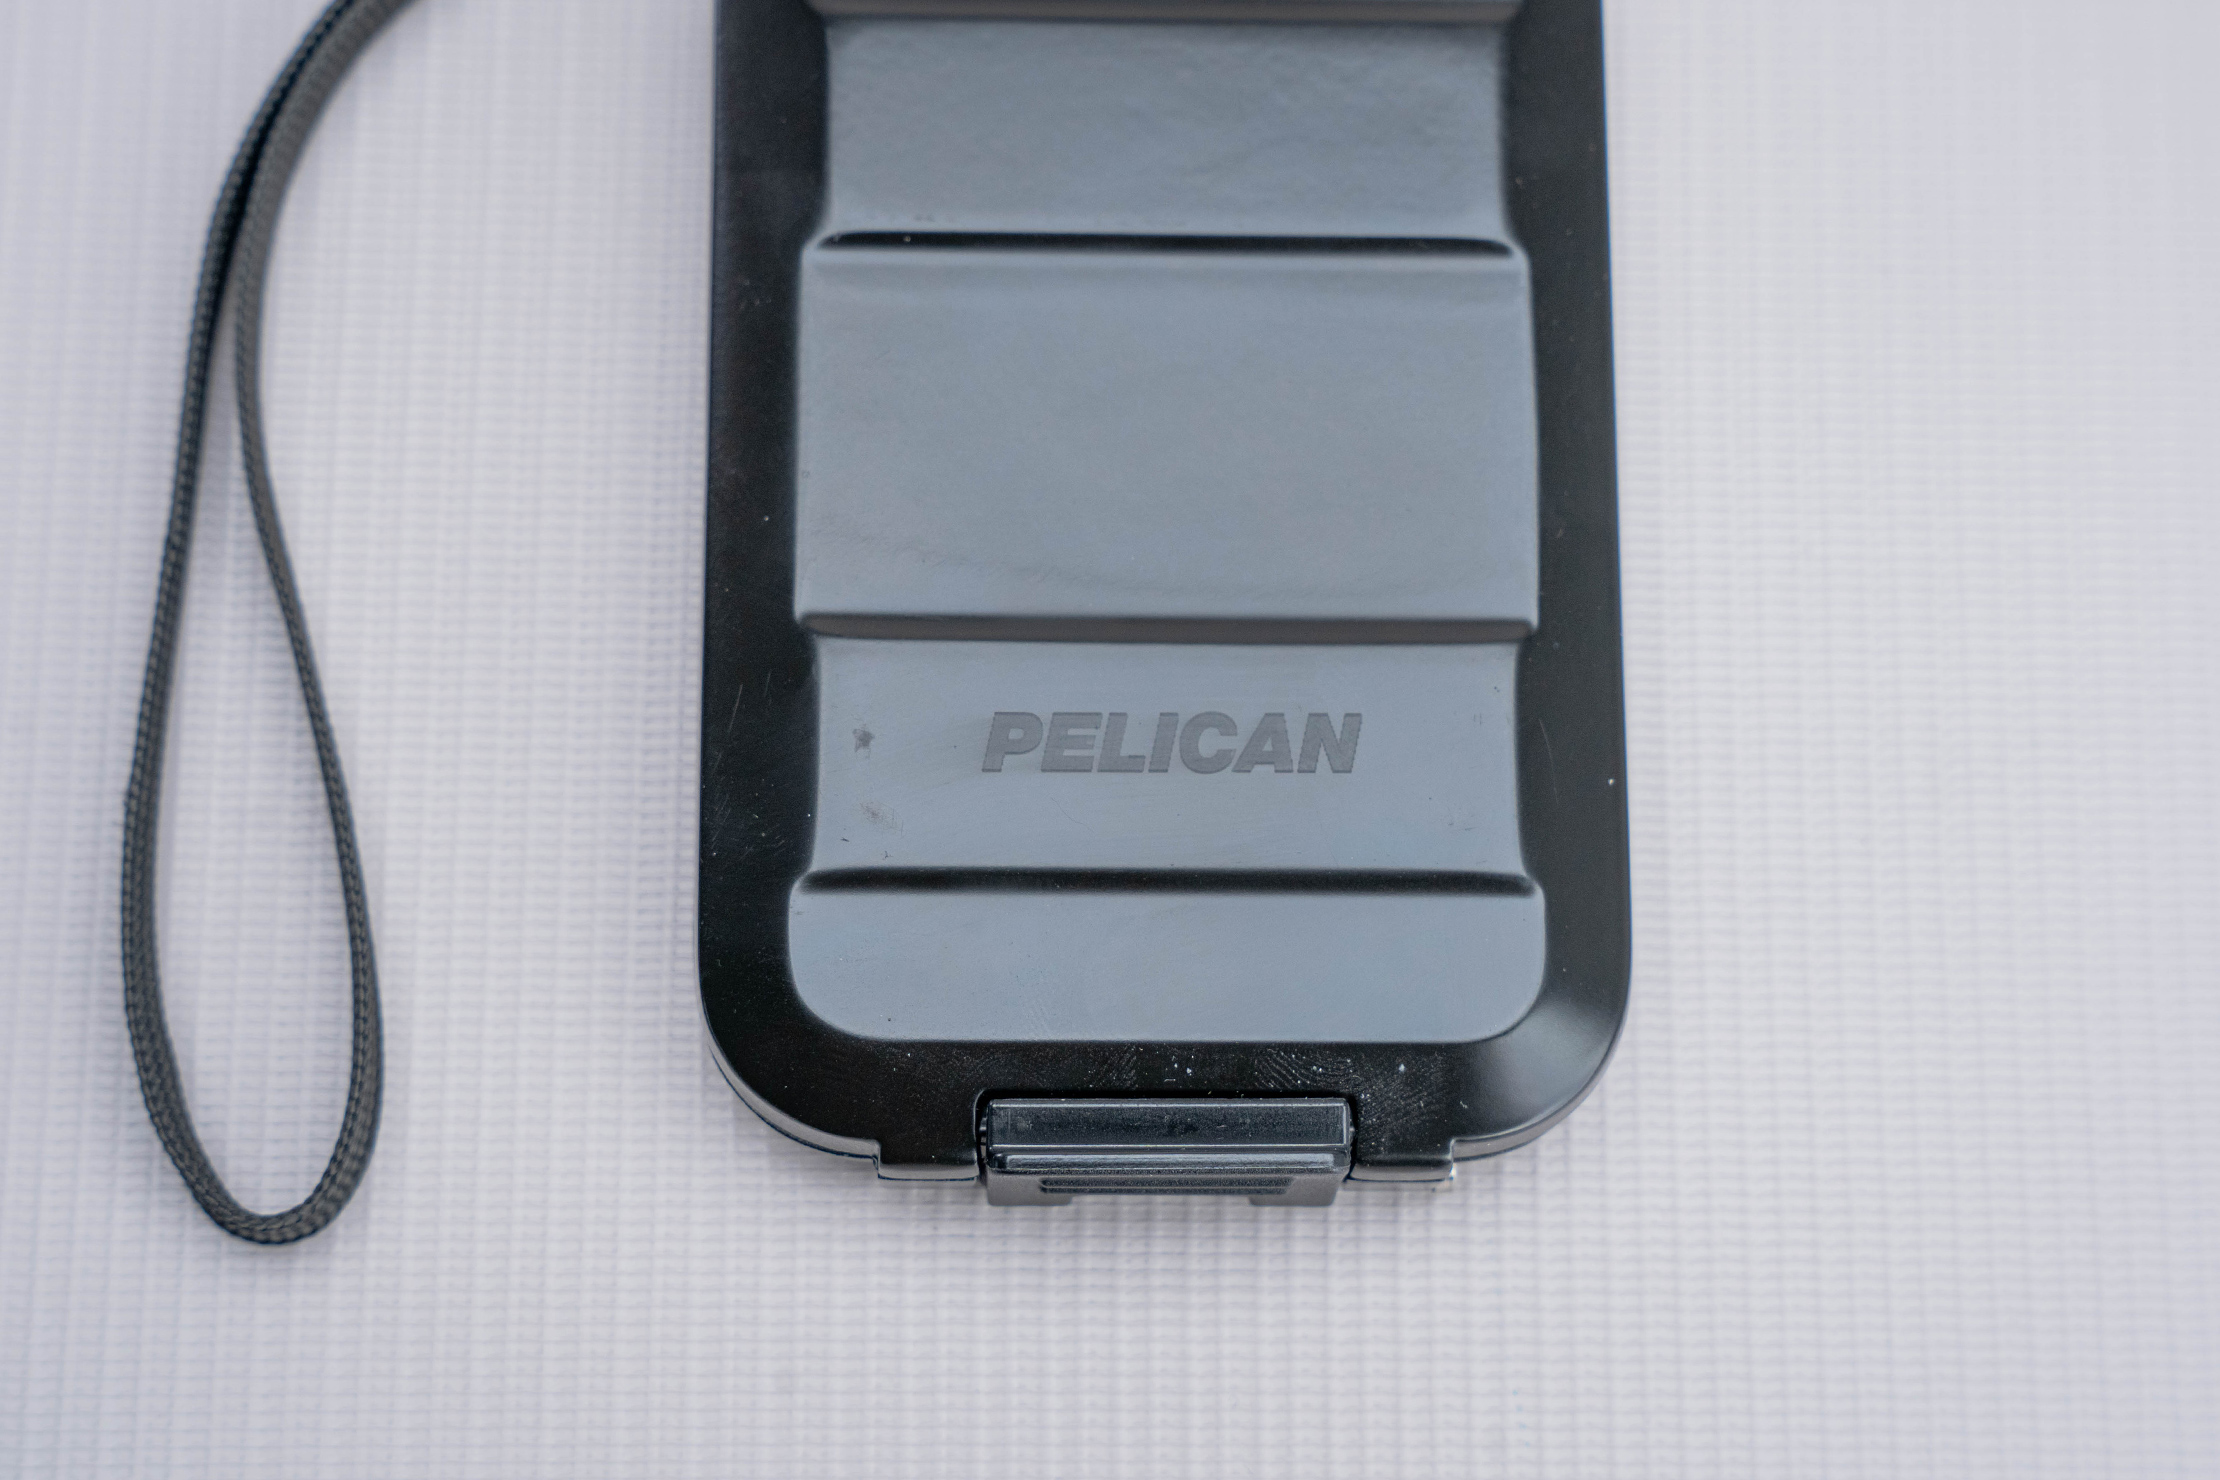 Pelican RF G5 Field Wallet Brand